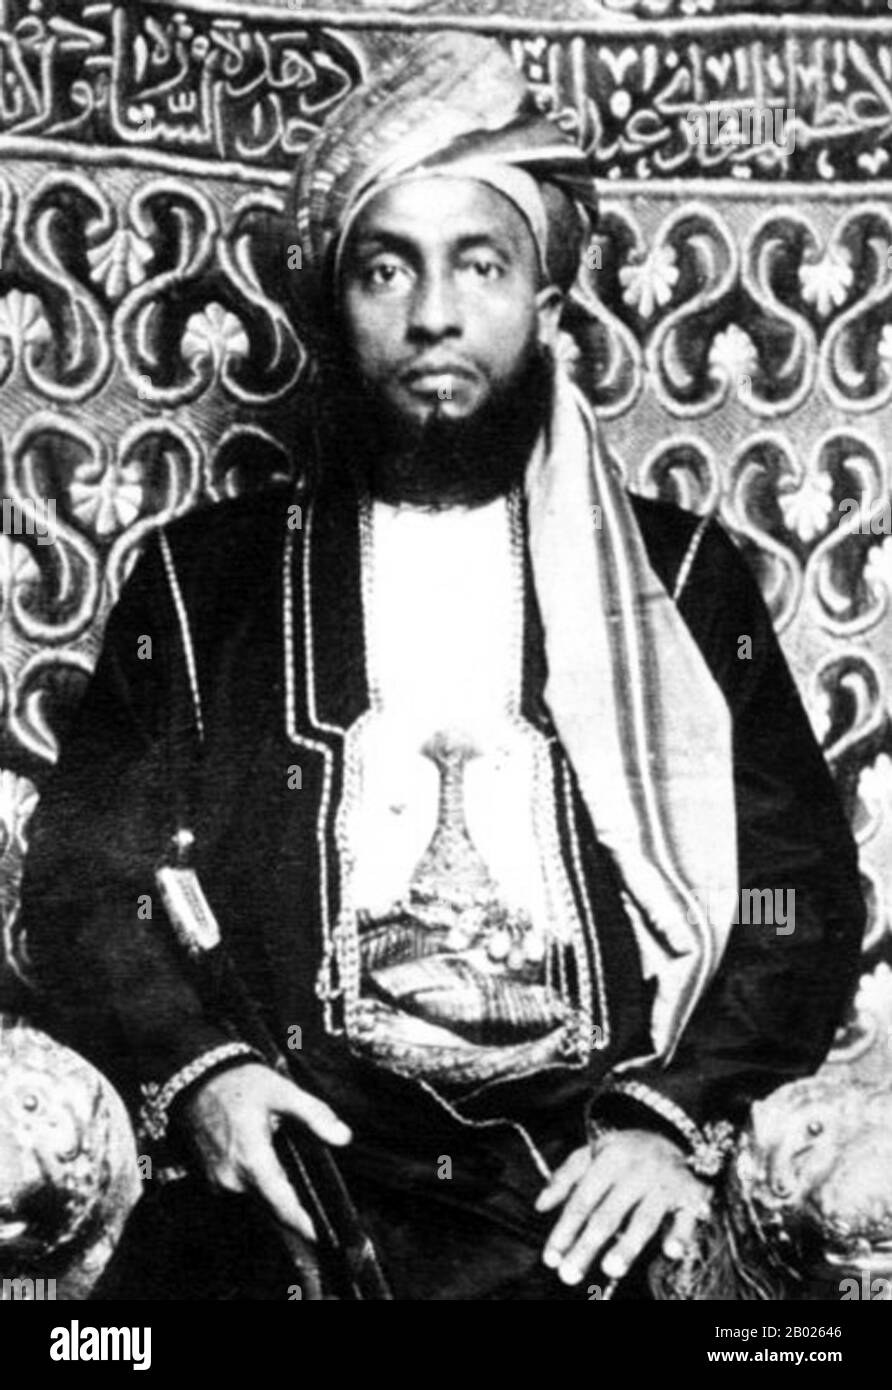 Sayyid Ali bin Sagte, Al-Busaid, GCSI, (von Dezember bis März 1893) (arabisch: علي بن سعيد البوسعيد‎) sei der vierte Sultan von Sansibar. Er regierte Sansibar vom 13. Februar 1890 bis 5. März 1893 und wurde Nachfolger seines Neffen Hamad bin Thuwaini Al-Busaid. Stockfoto